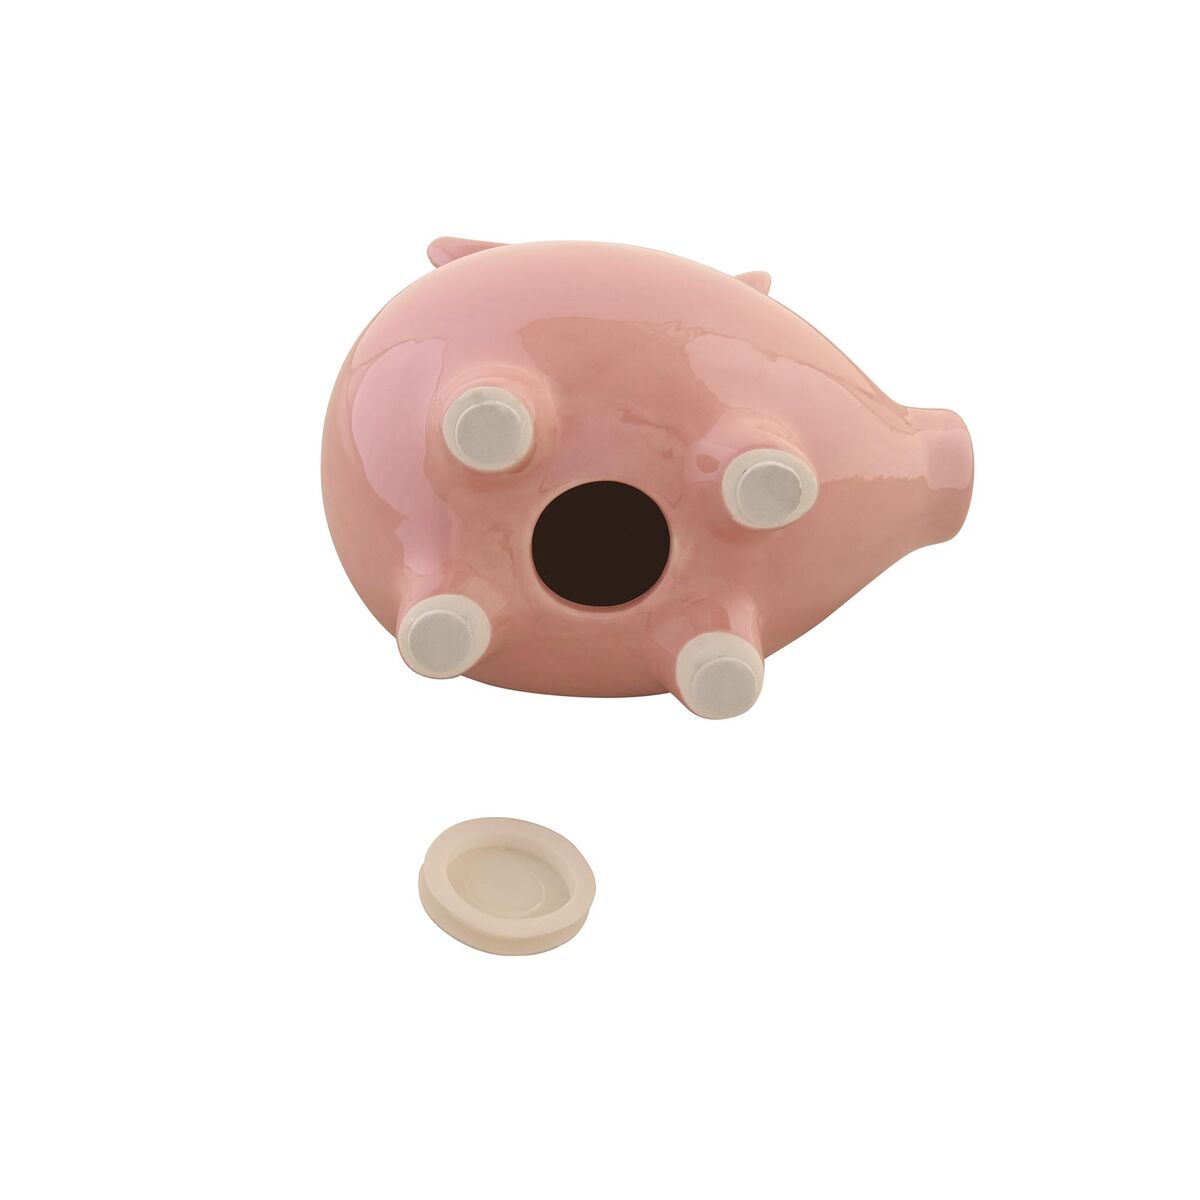 Money box for children (pig)